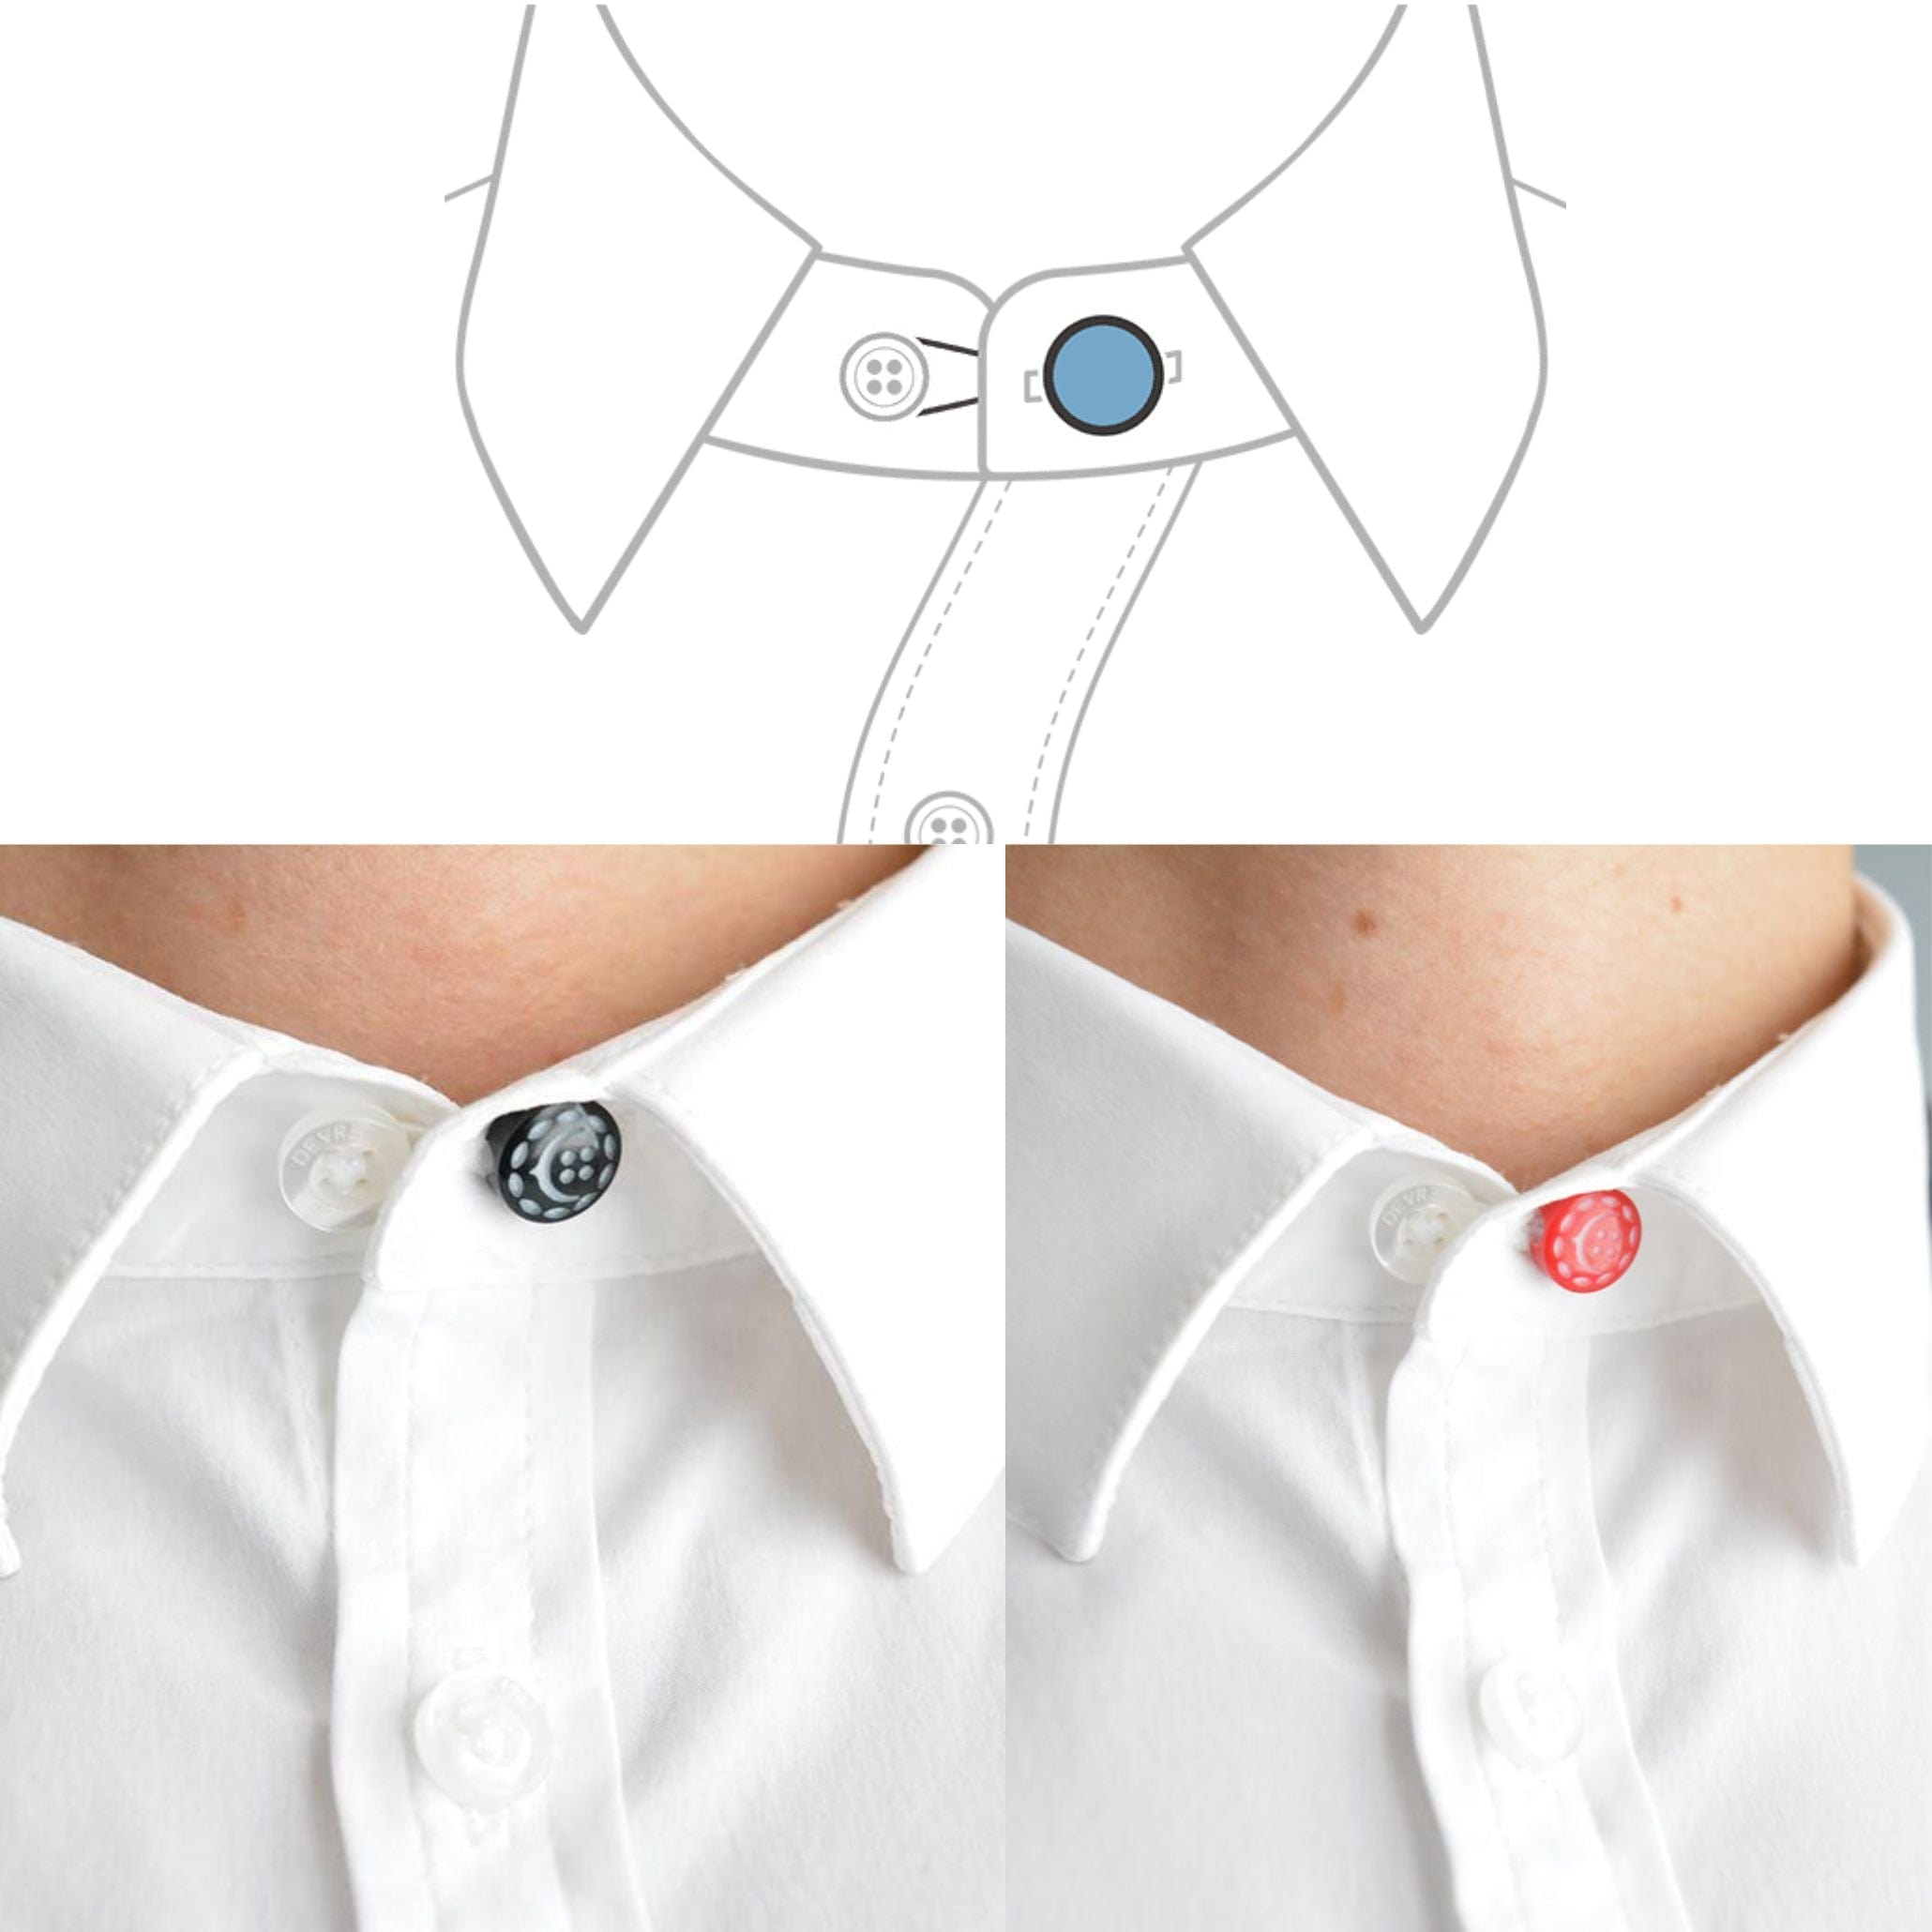 COCHIC Shirt & Pant Button Extender Set (3pcs, various colors)